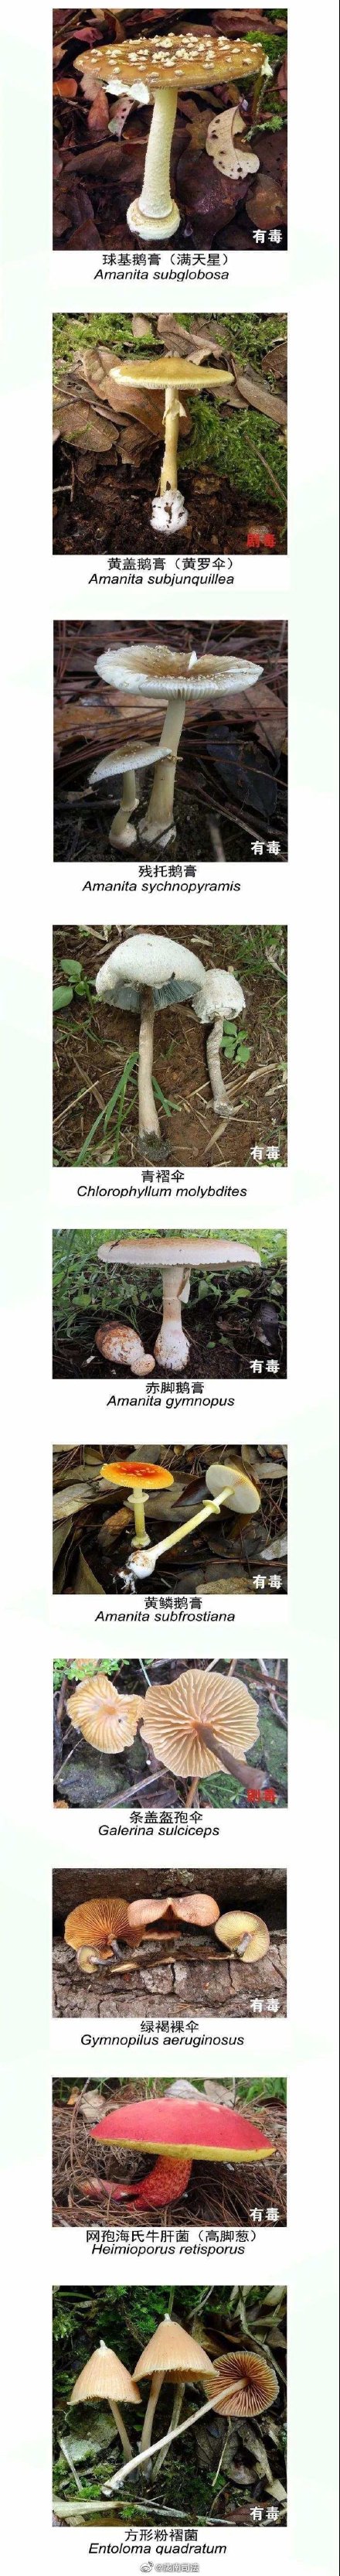 如何辨别有毒蘑菇 有毒蘑菇和无毒蘑菇的区别